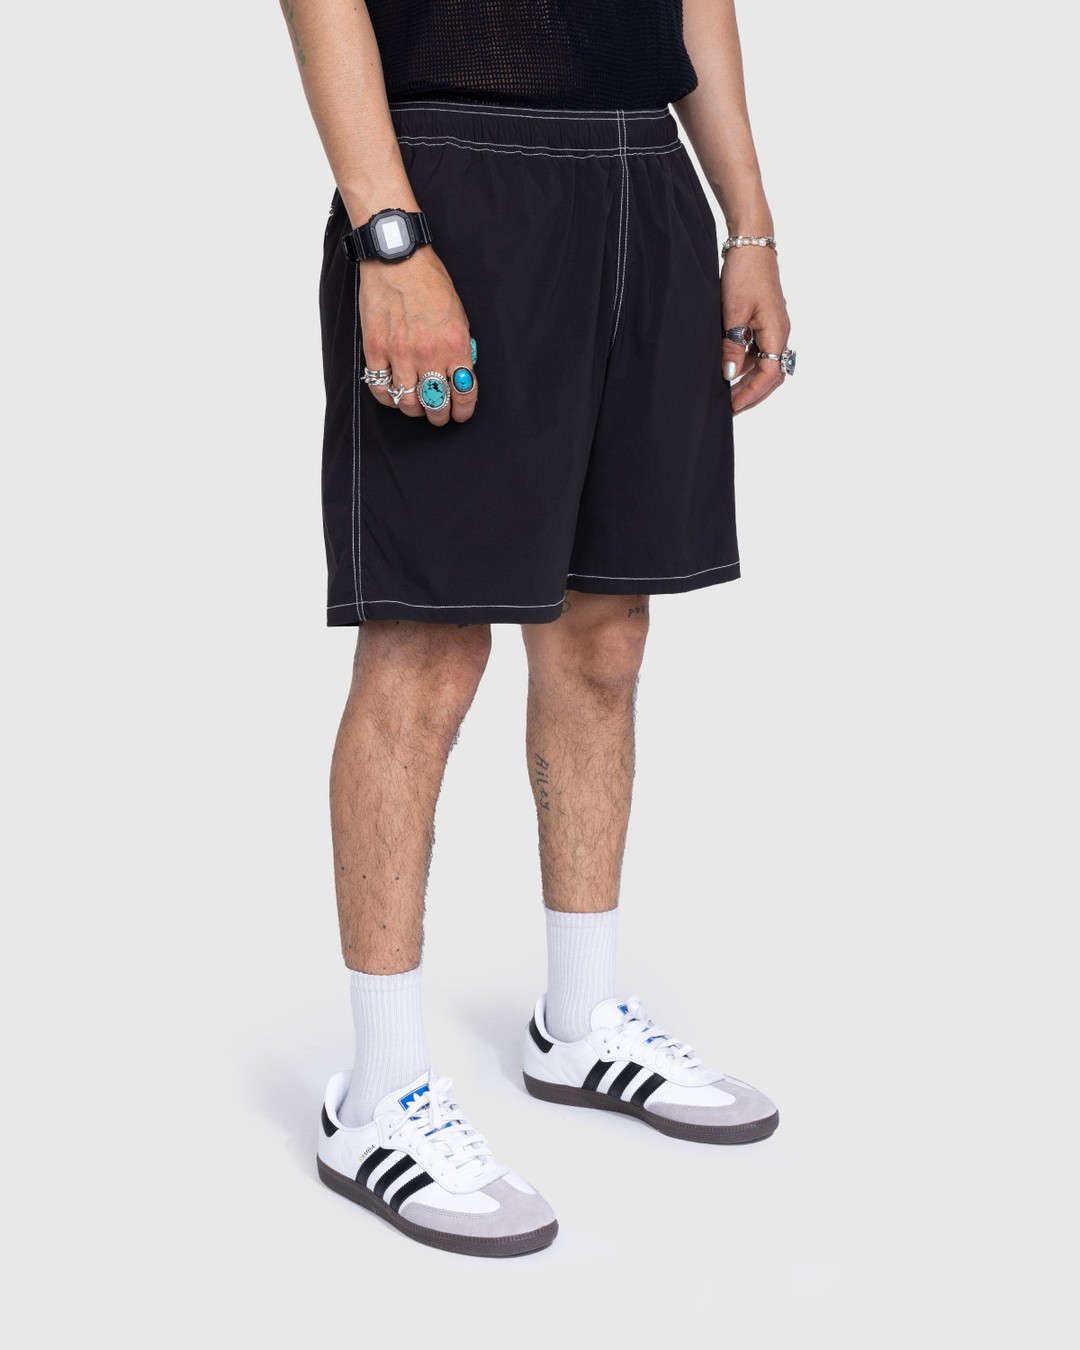 Highsnobiety – Side Cargo Shorts Charcoal Black - Active Shorts - Black - Image 4